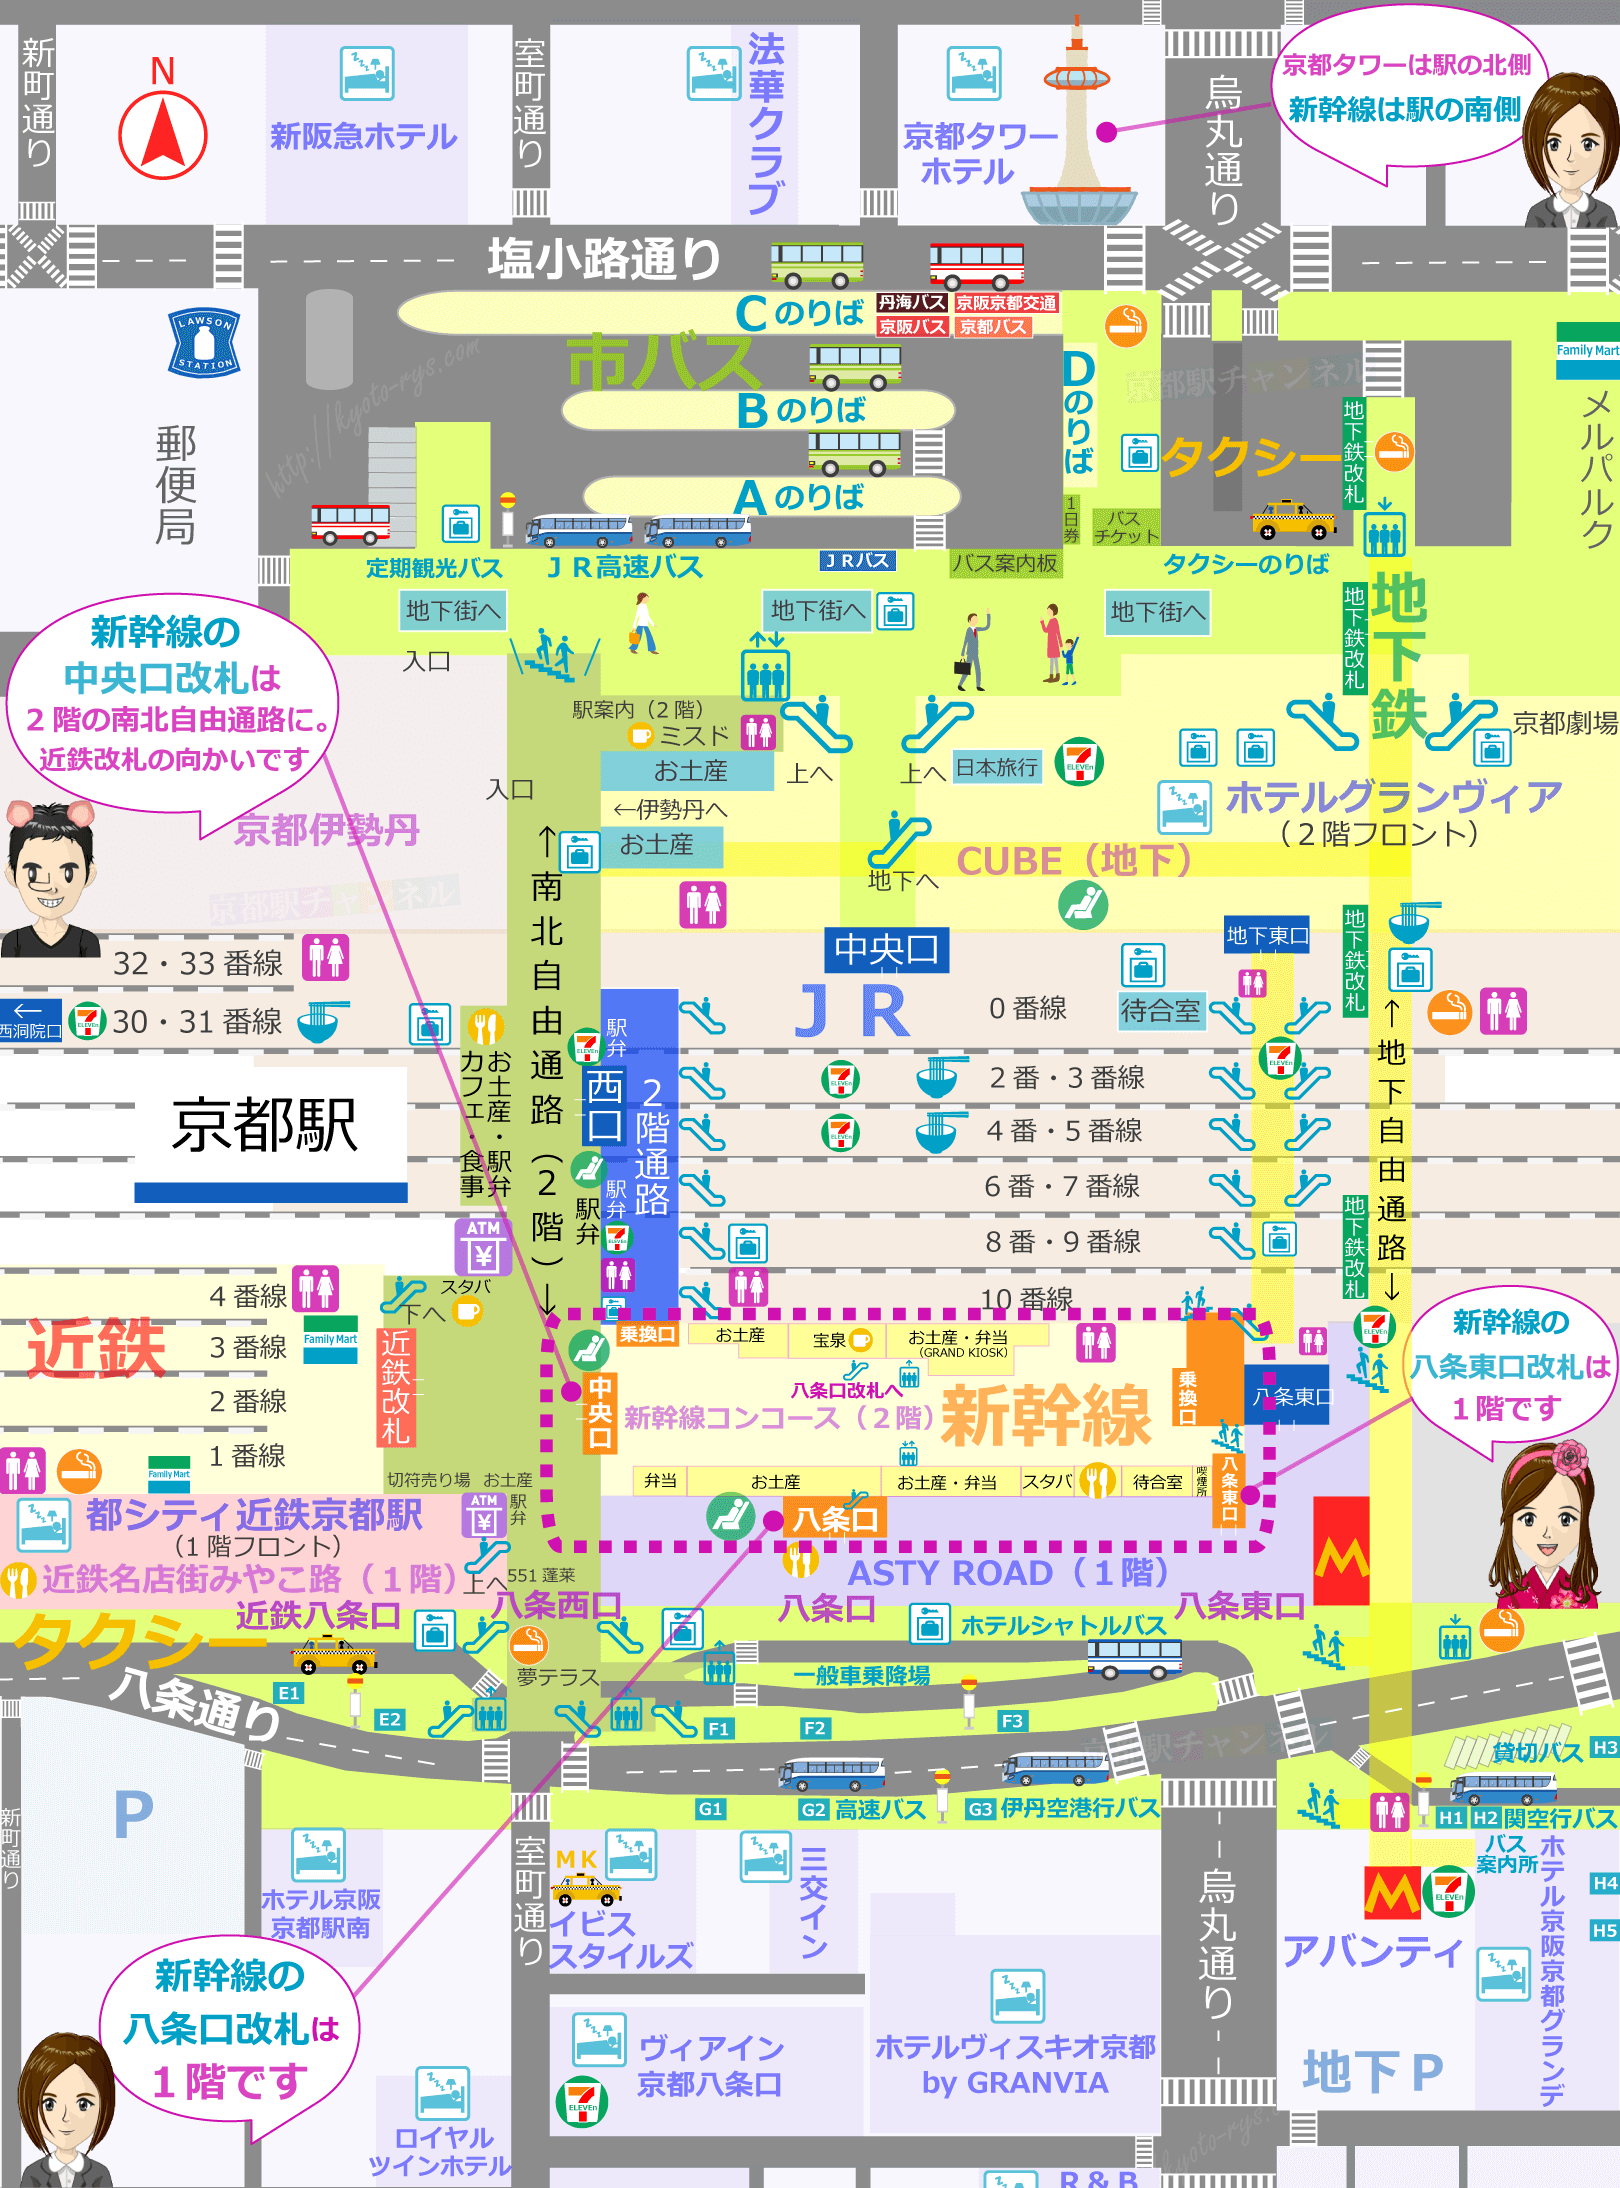 京都駅の全体マップと新幹線の改札